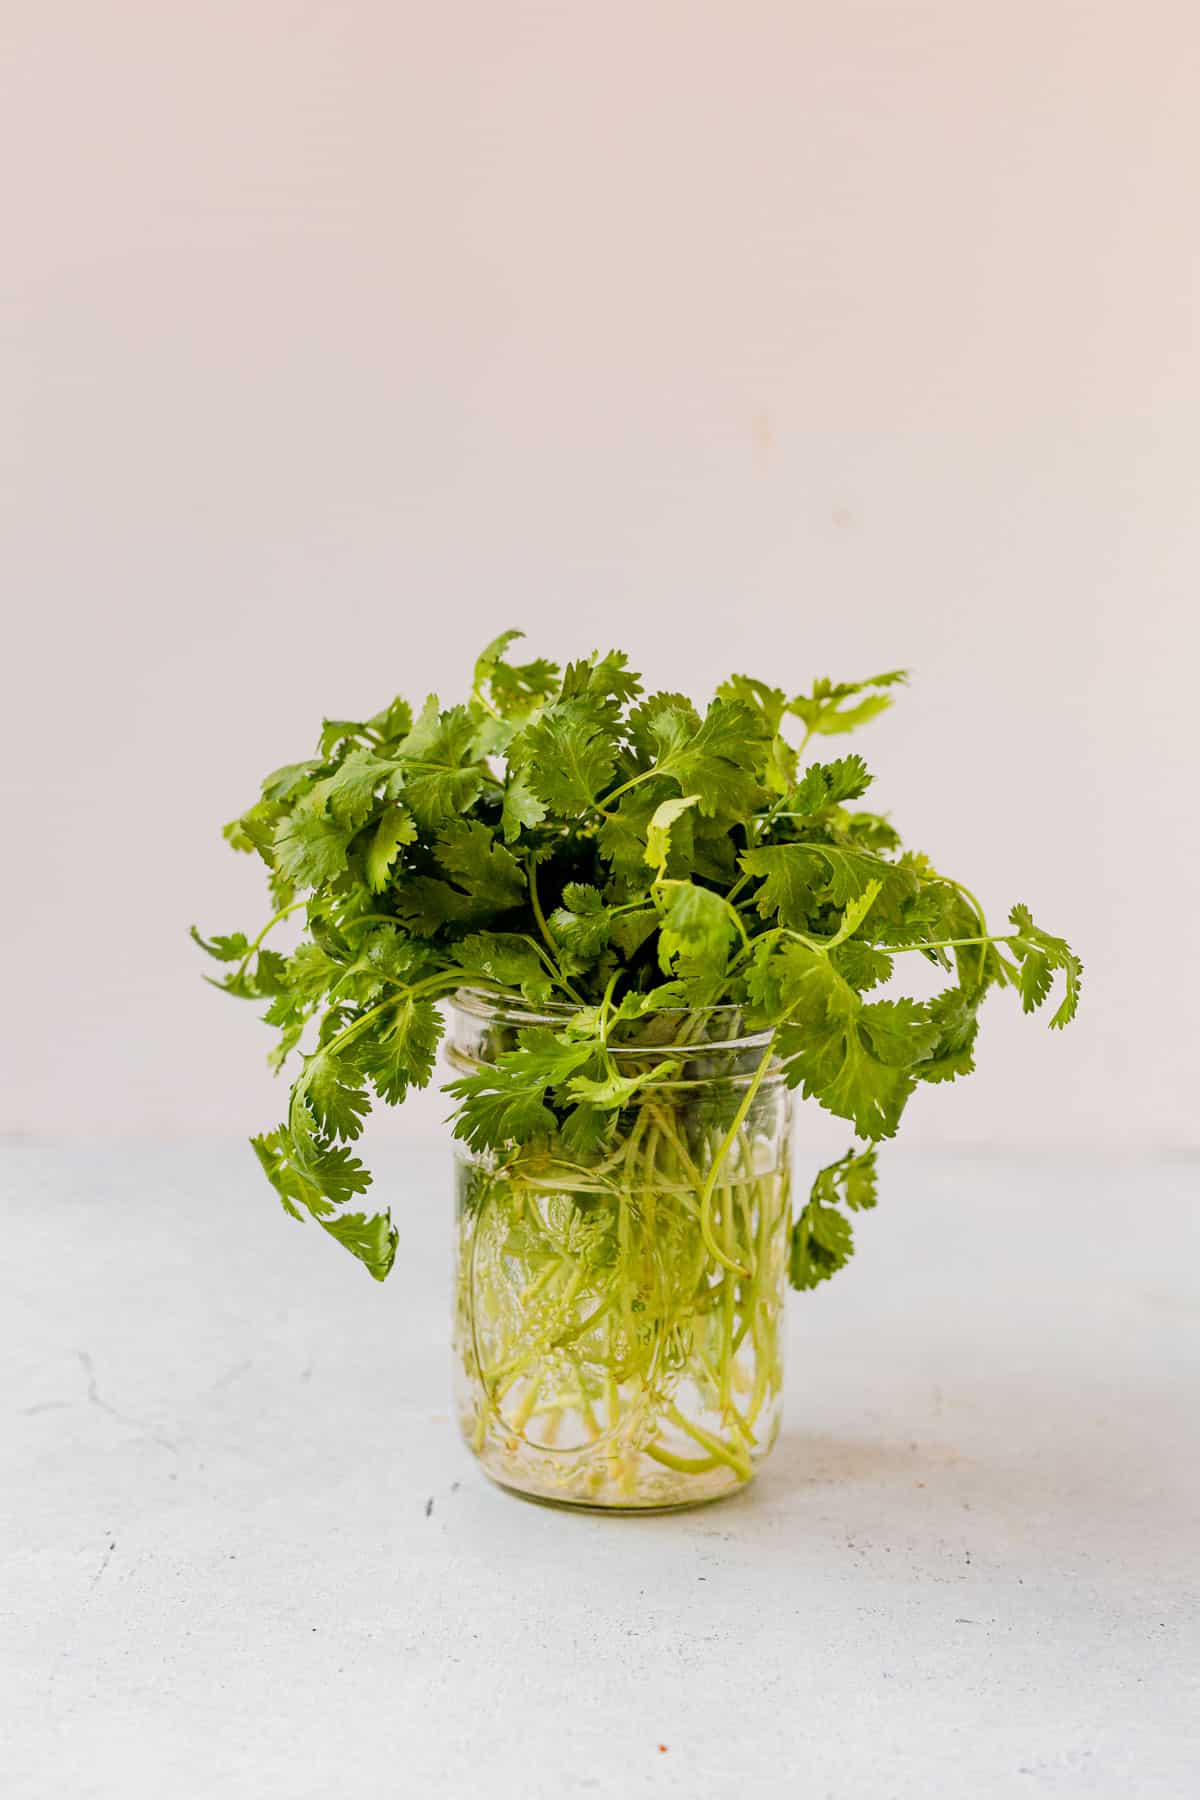 cilantro in a glass jar